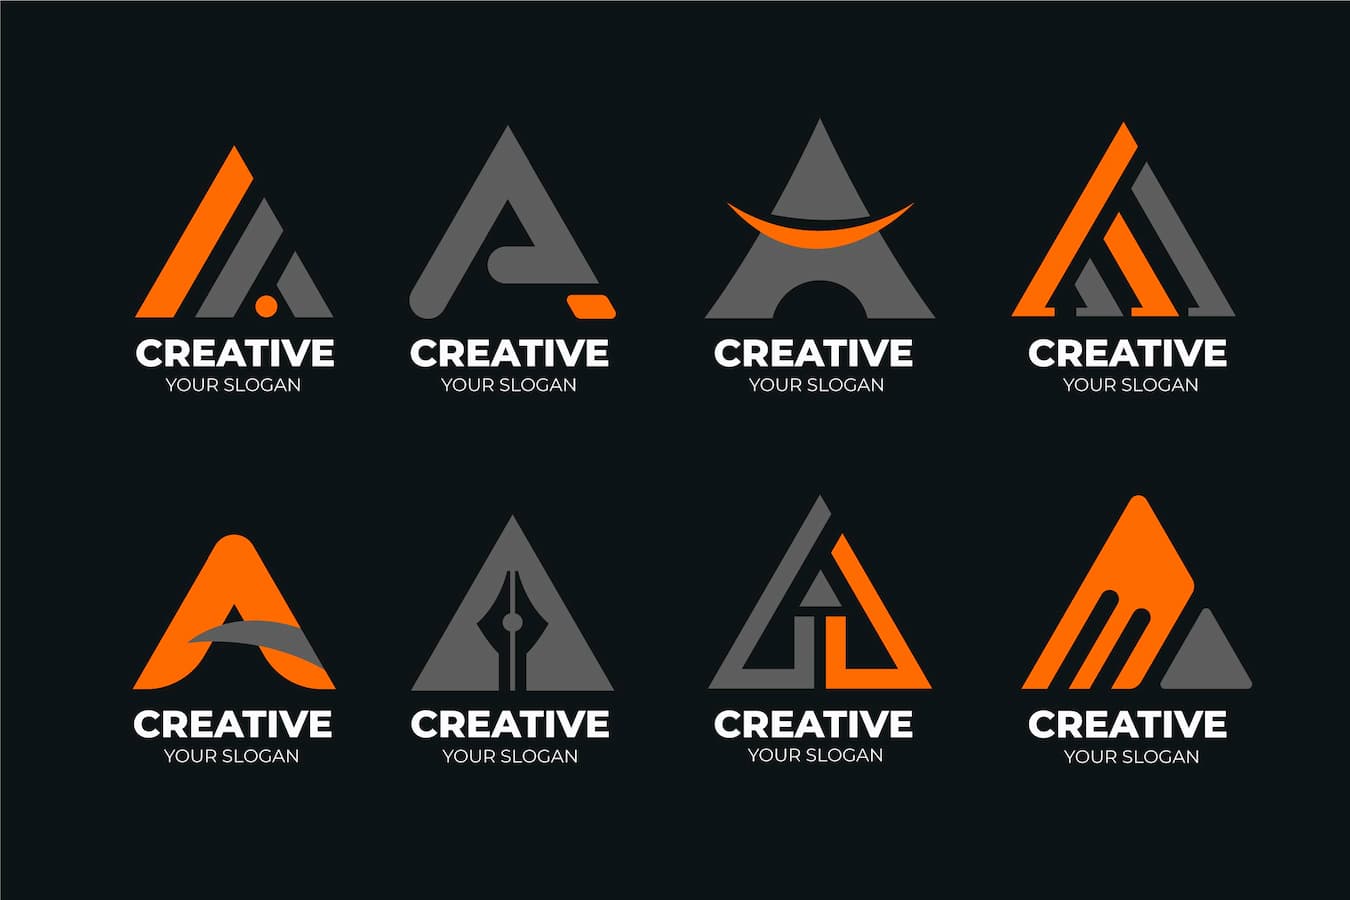 Website Untuk Membuat Desain Logo Gratis Online